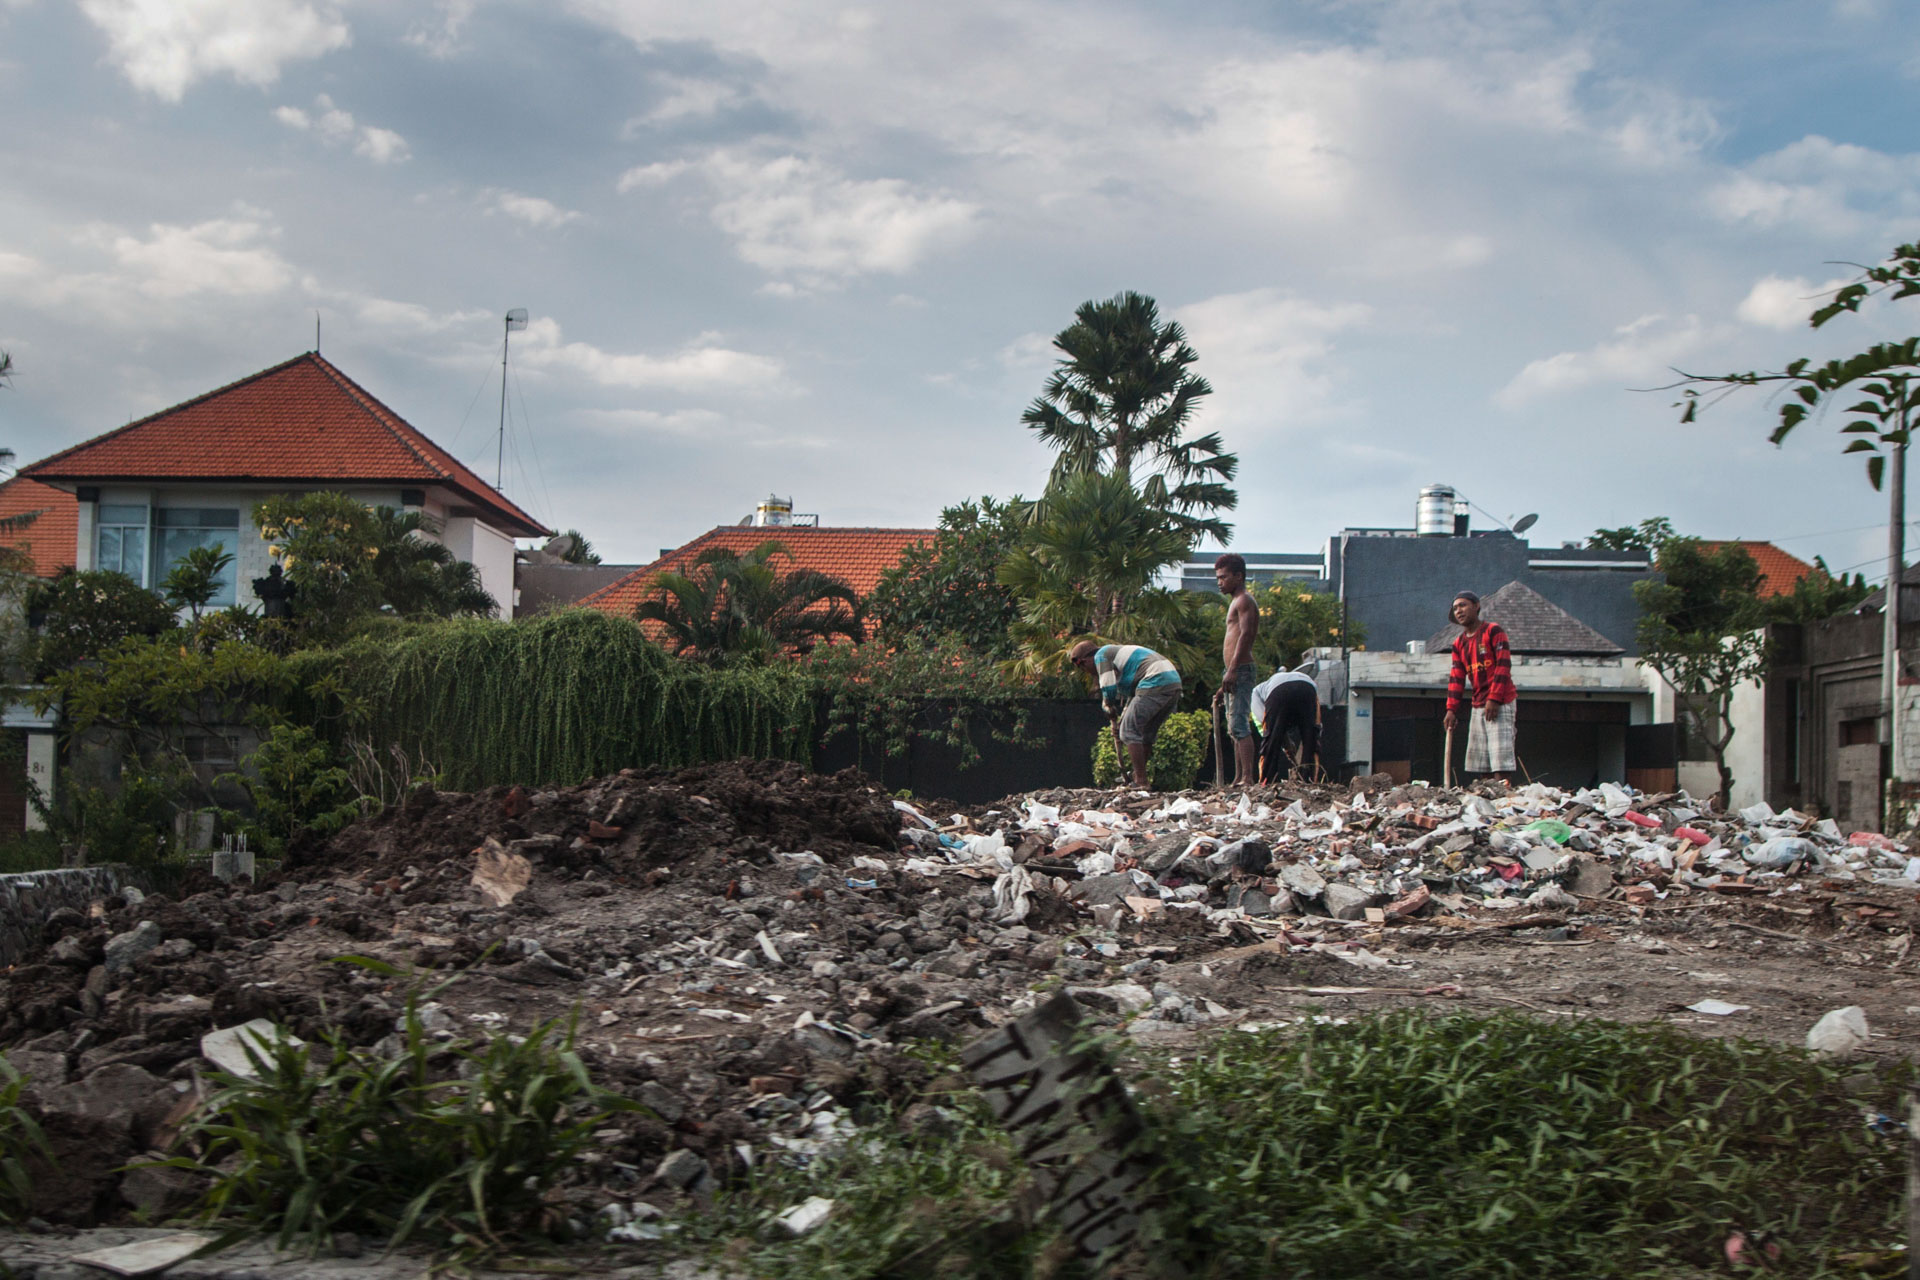 Langs alle veier ligger det plastikkposer og plastikkflasker, og søppel brennes utenfor husene. Foreløpig har ikke Bali et system for å bli kvitt dette avfallet på en bærekraftig måte. (Foto: Andrea A. Thiis-Evensen)